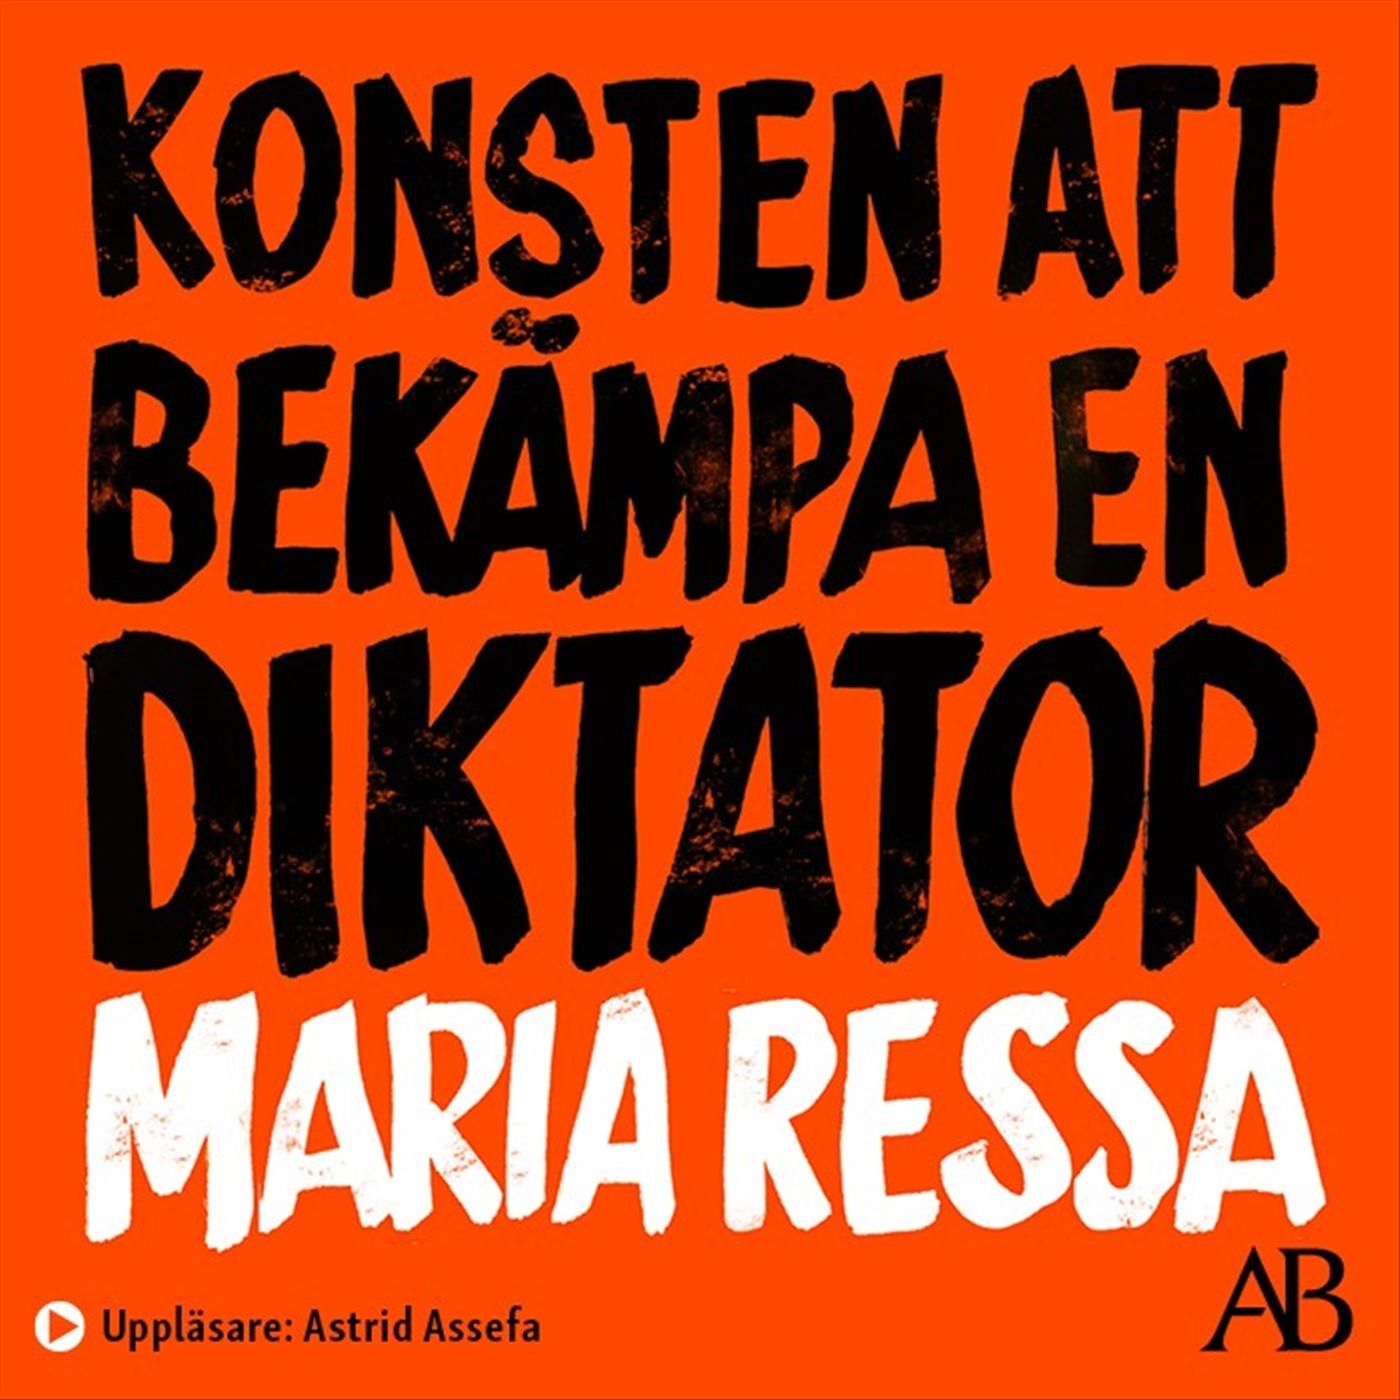 Konsten att bekämpa en diktator, ljudbok av Maria Ressa